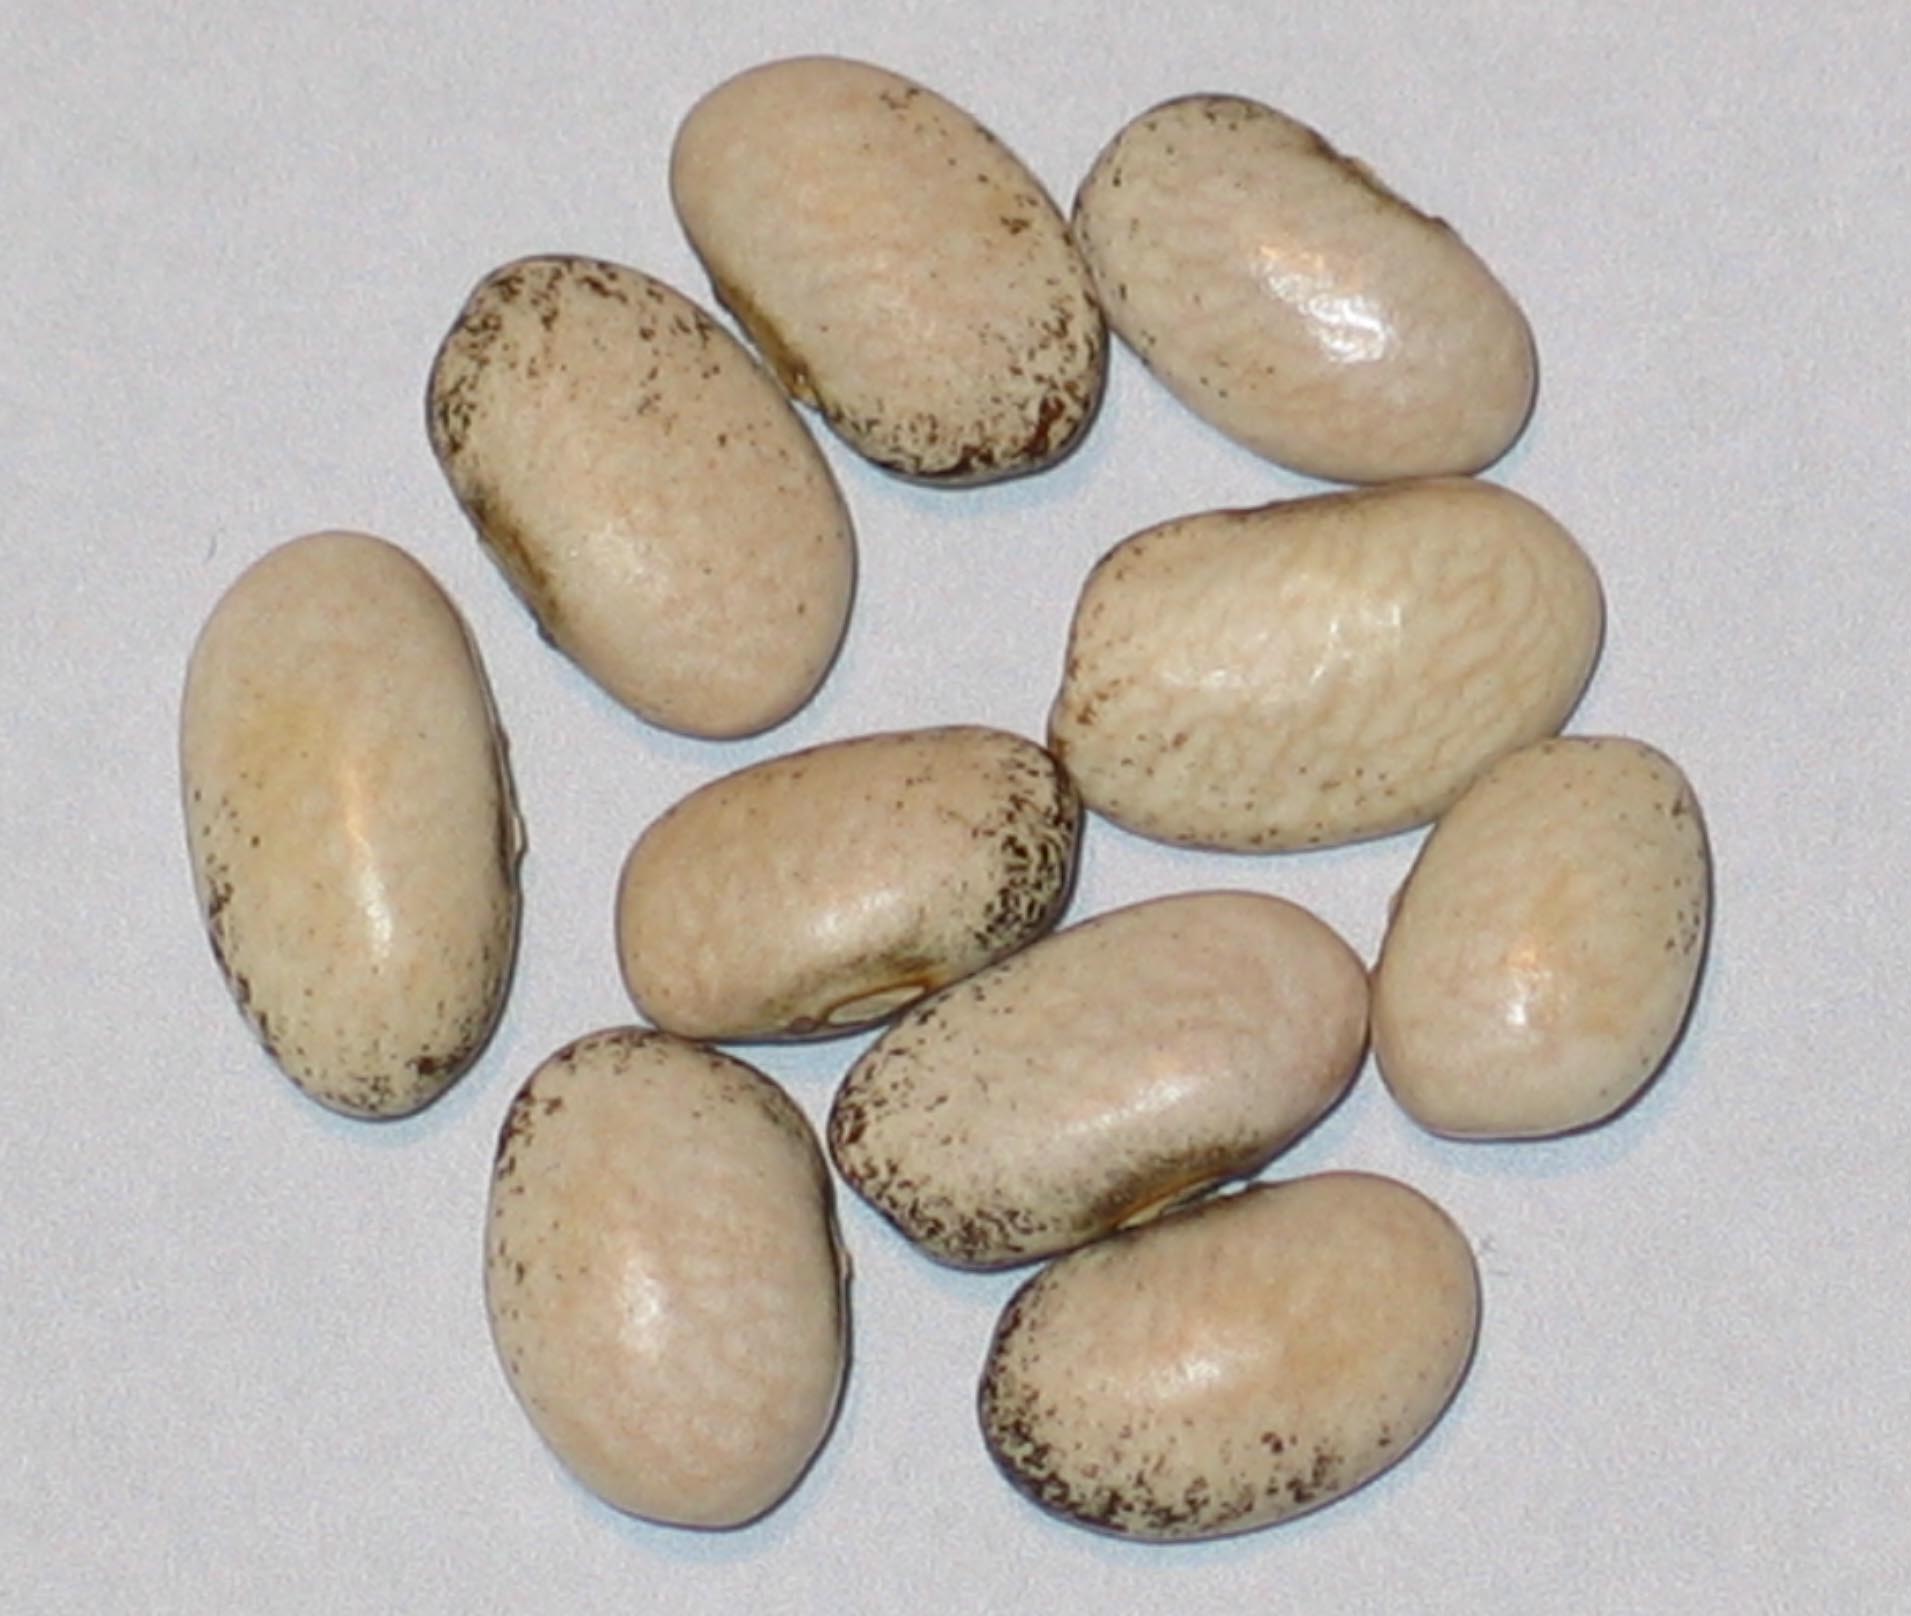 image of Nova Star beans